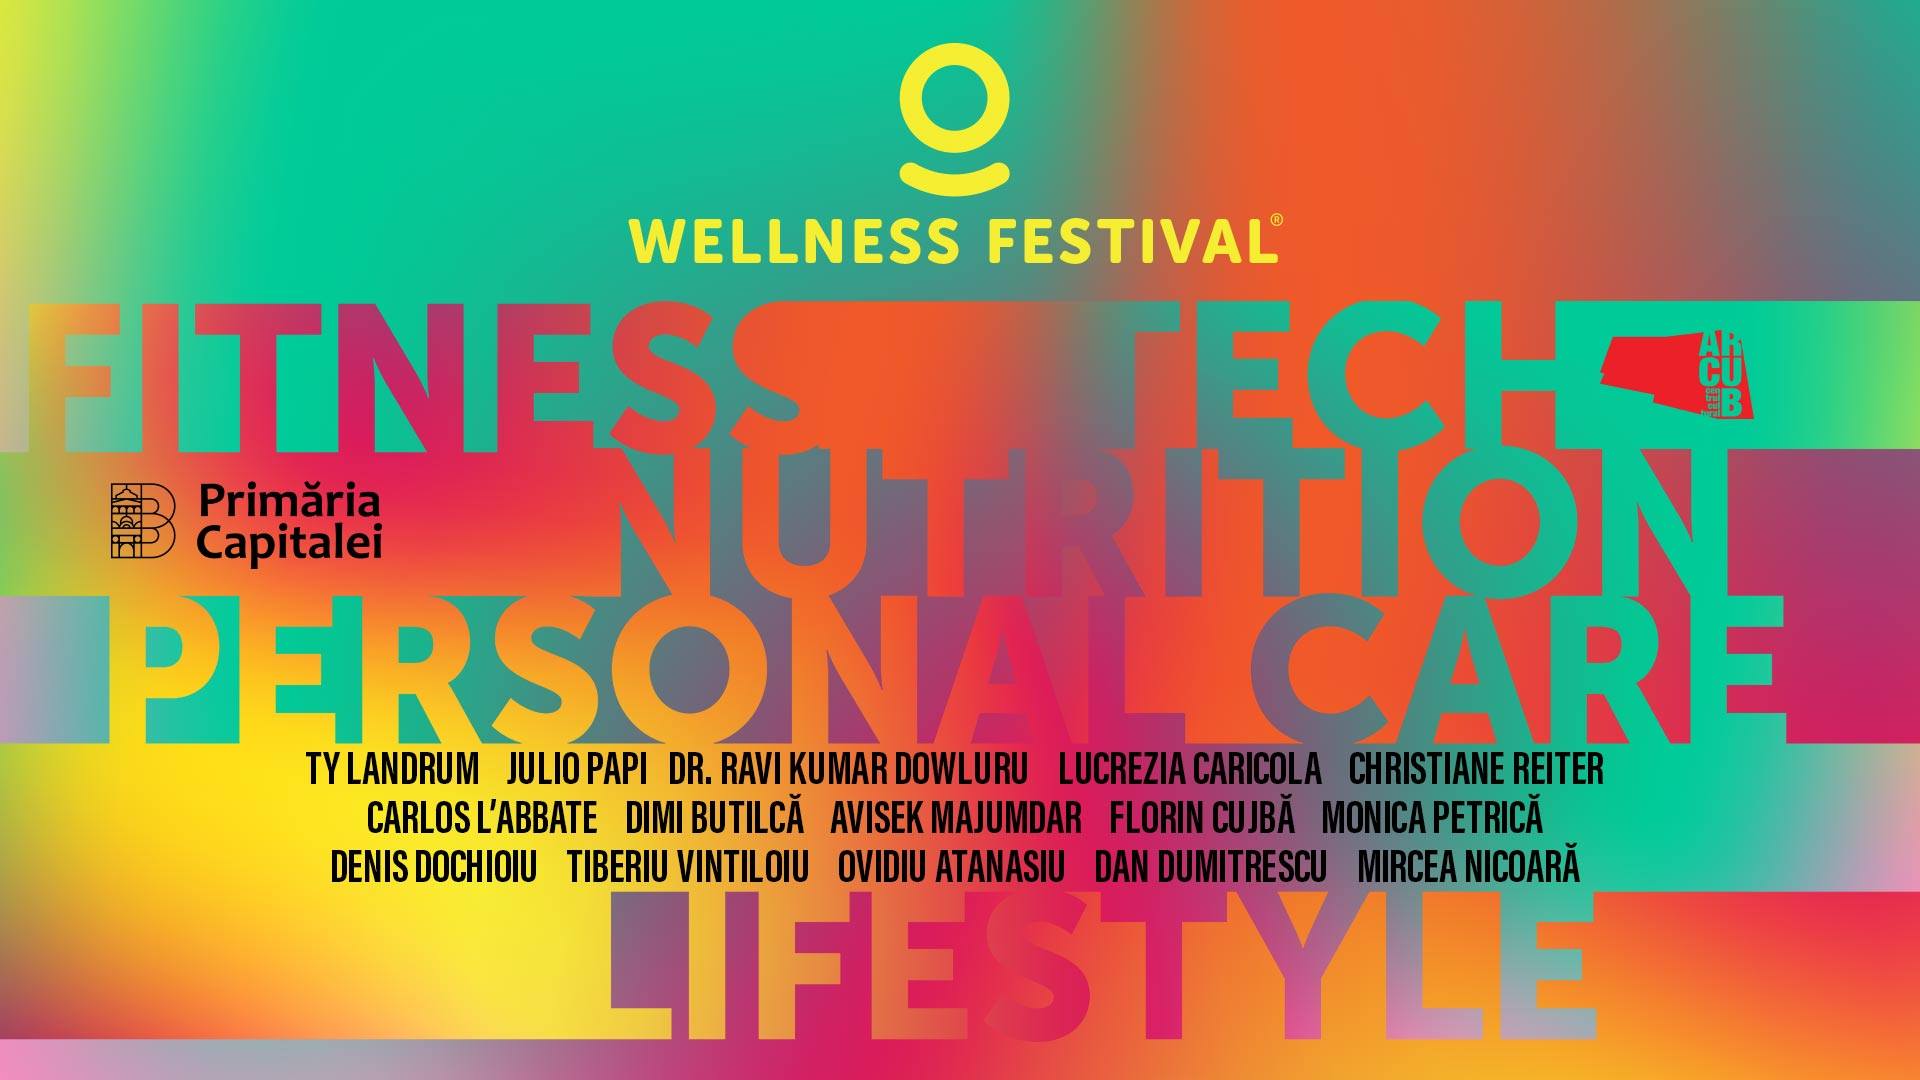 Wellness festival